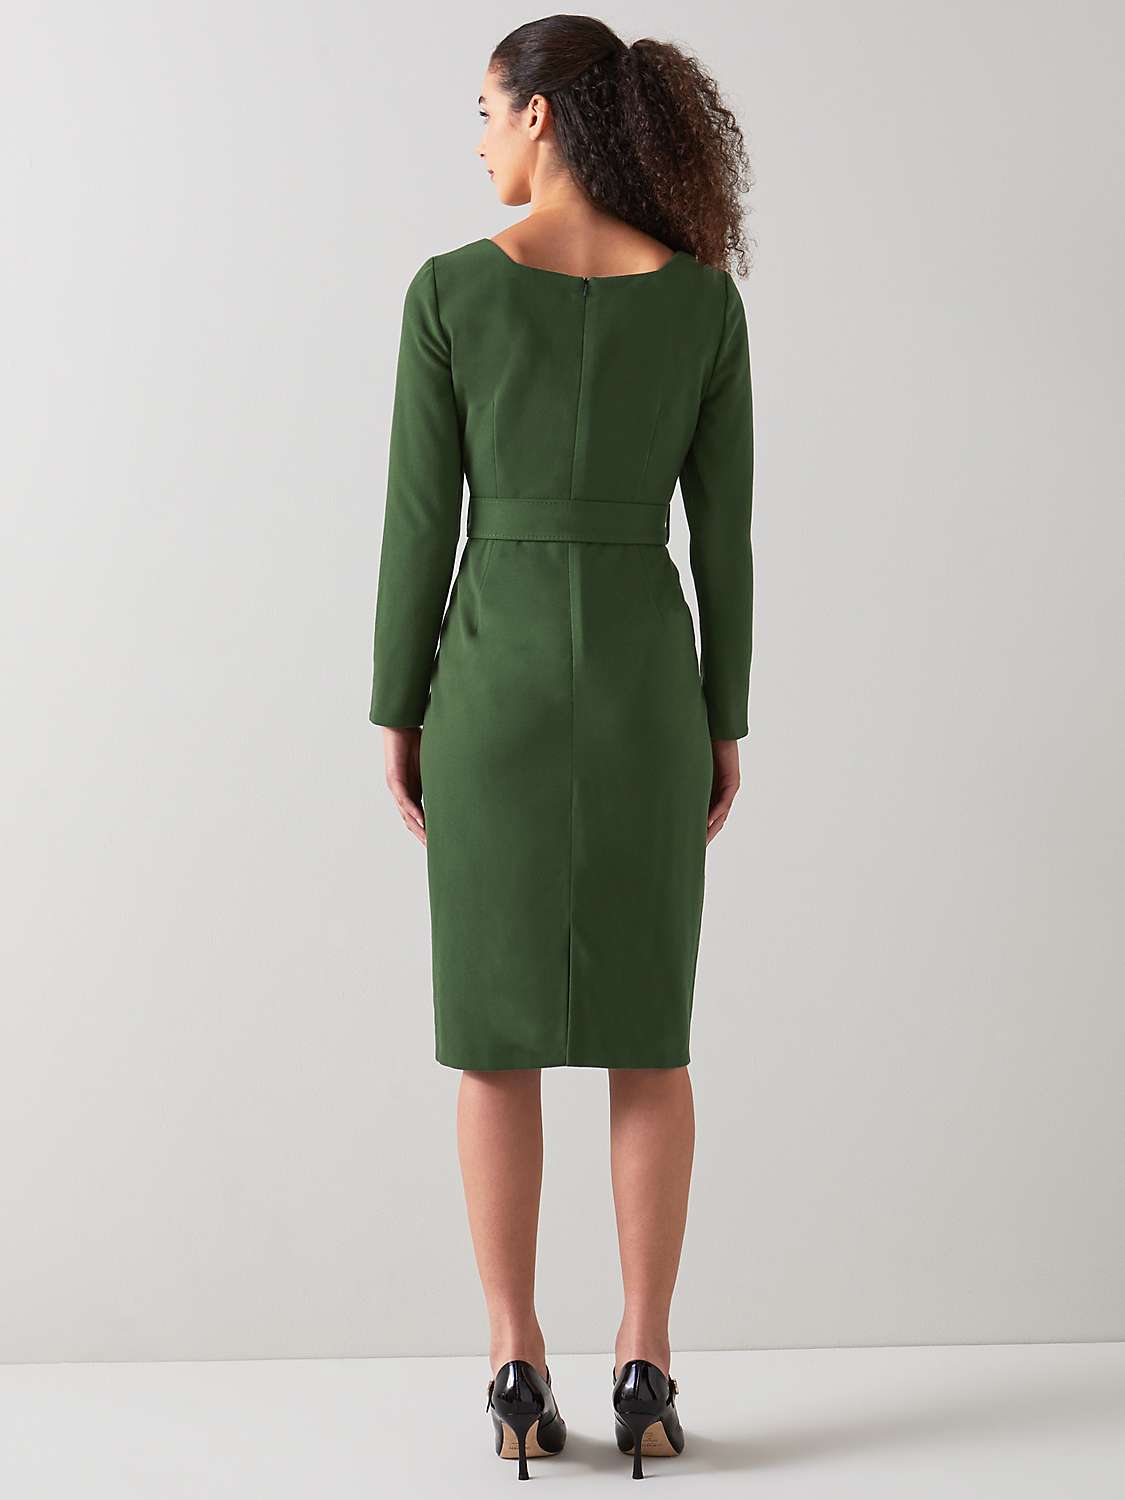 Buy L.K.Bennett Carrington Tailored Dress Online at johnlewis.com